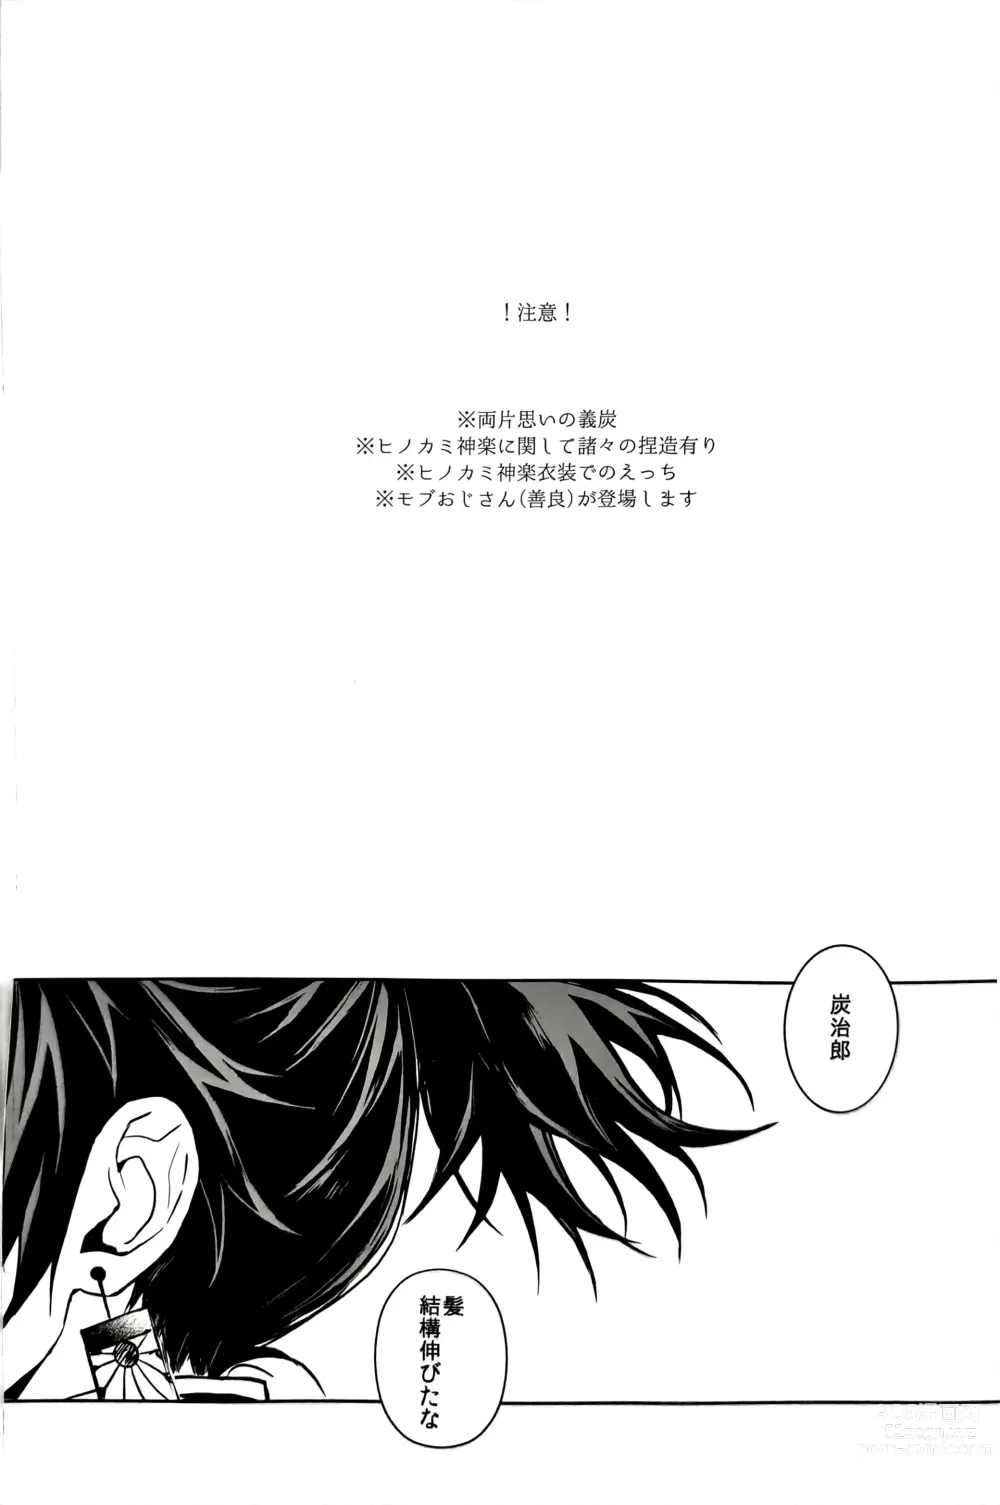 Page 2 of doujinshi Netsu o Haramu